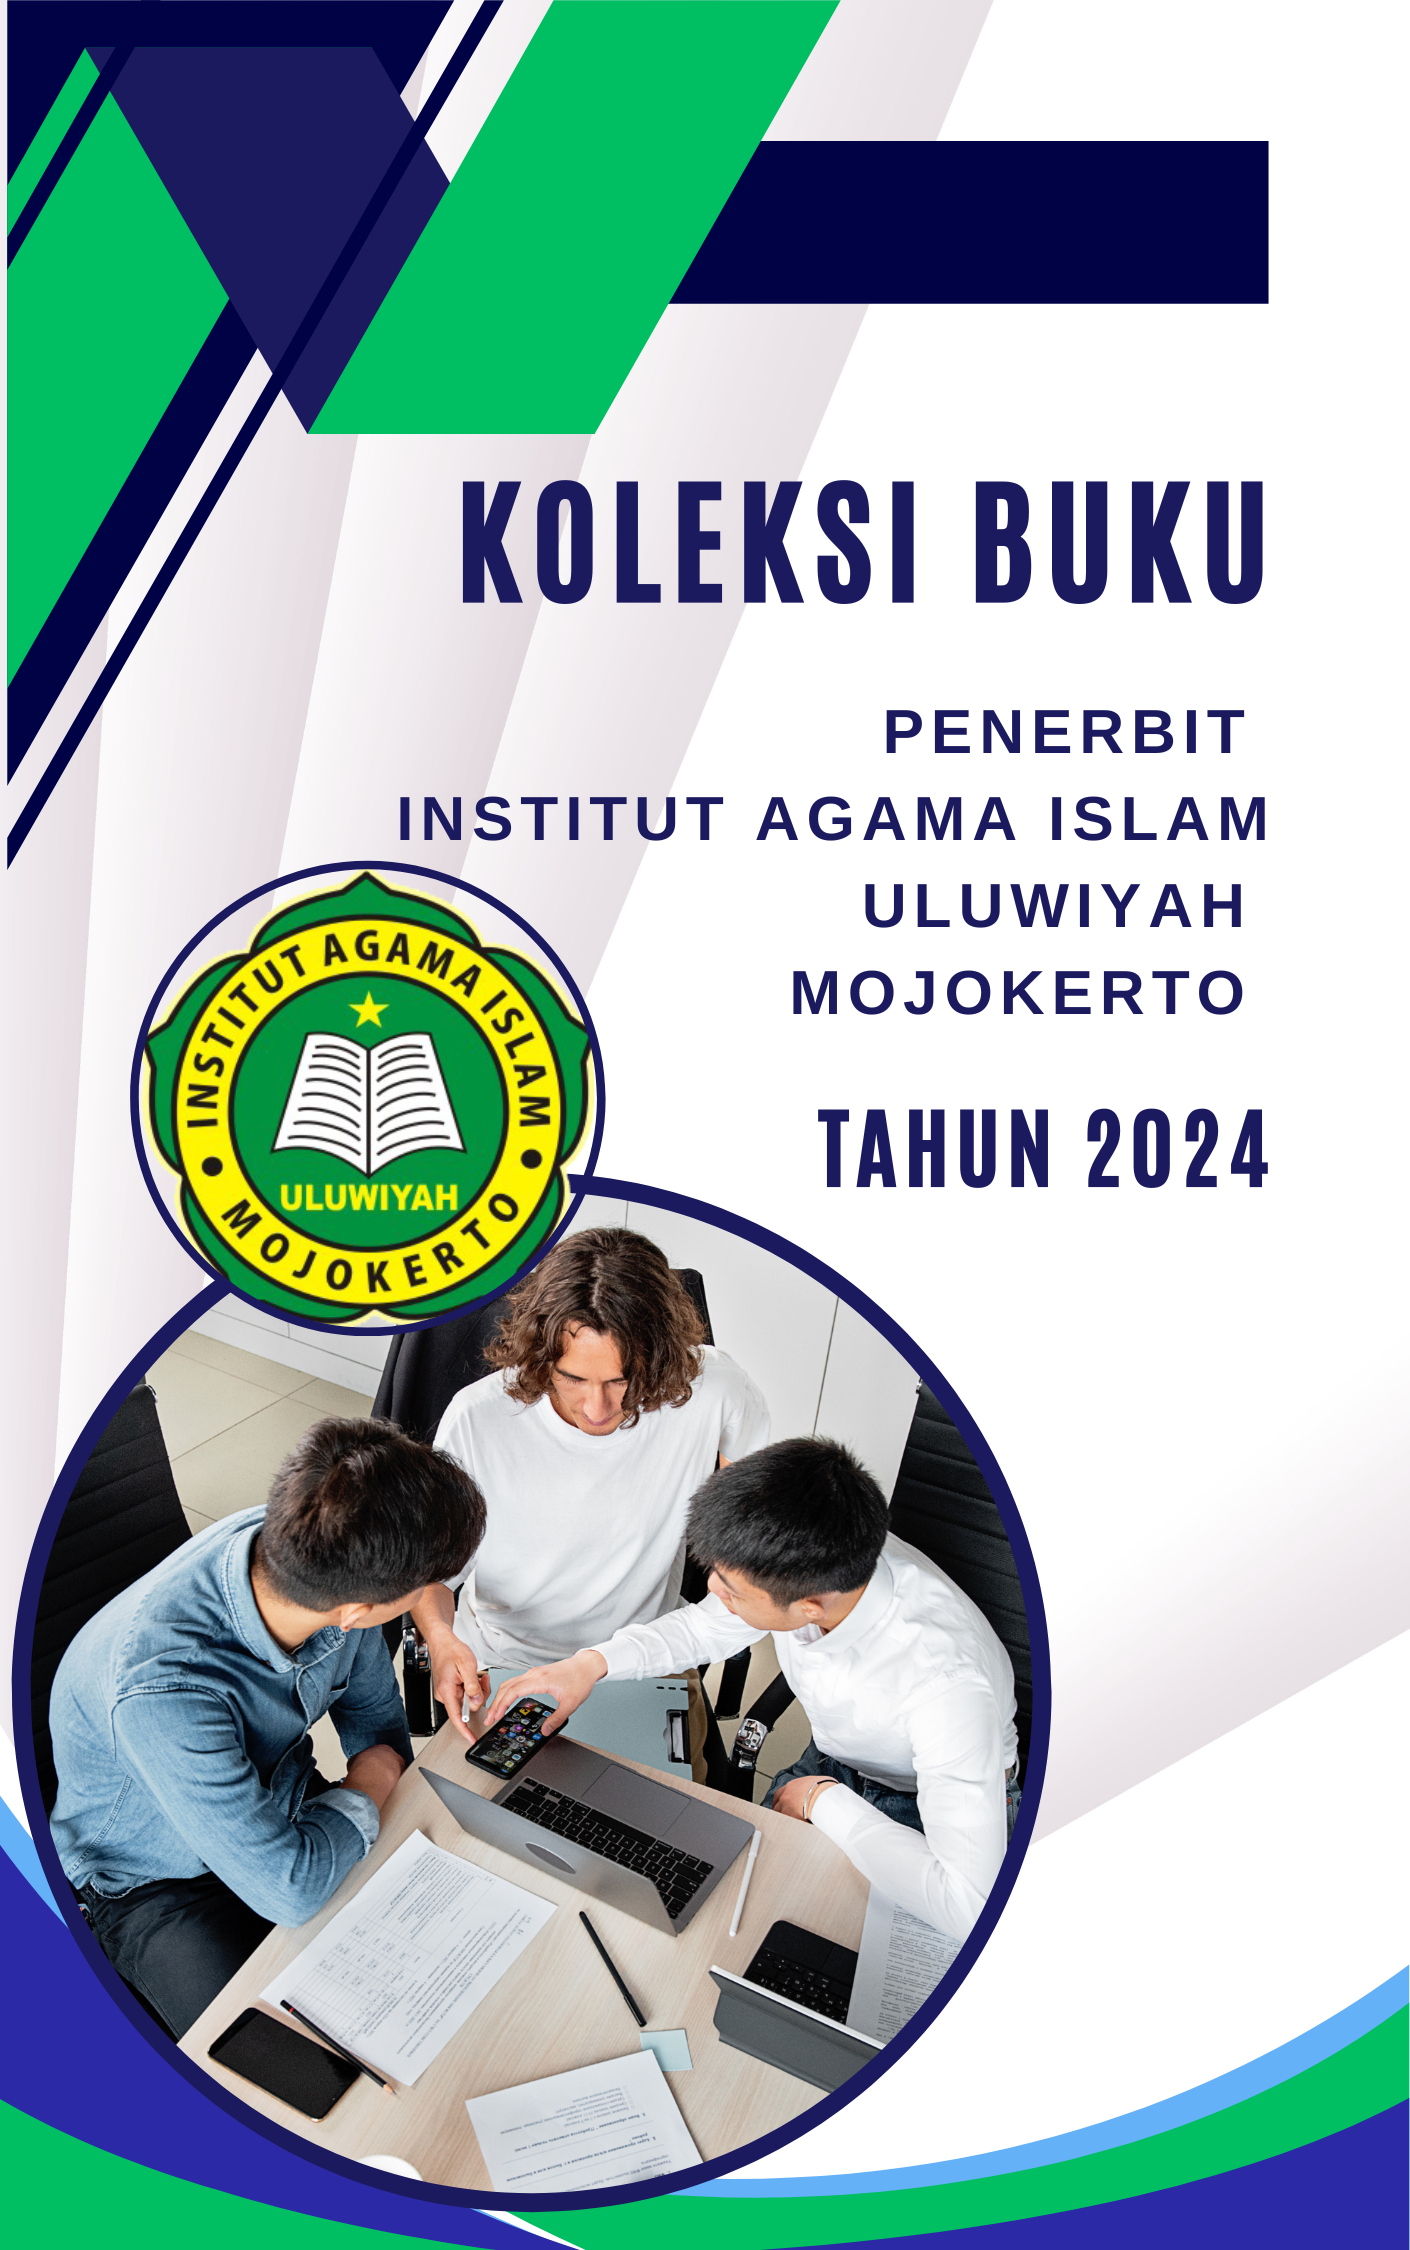 					View Koleksi Buku Penerbit Institut Agama Islam Uluwiyah Mojokerto Tahun 2024
				